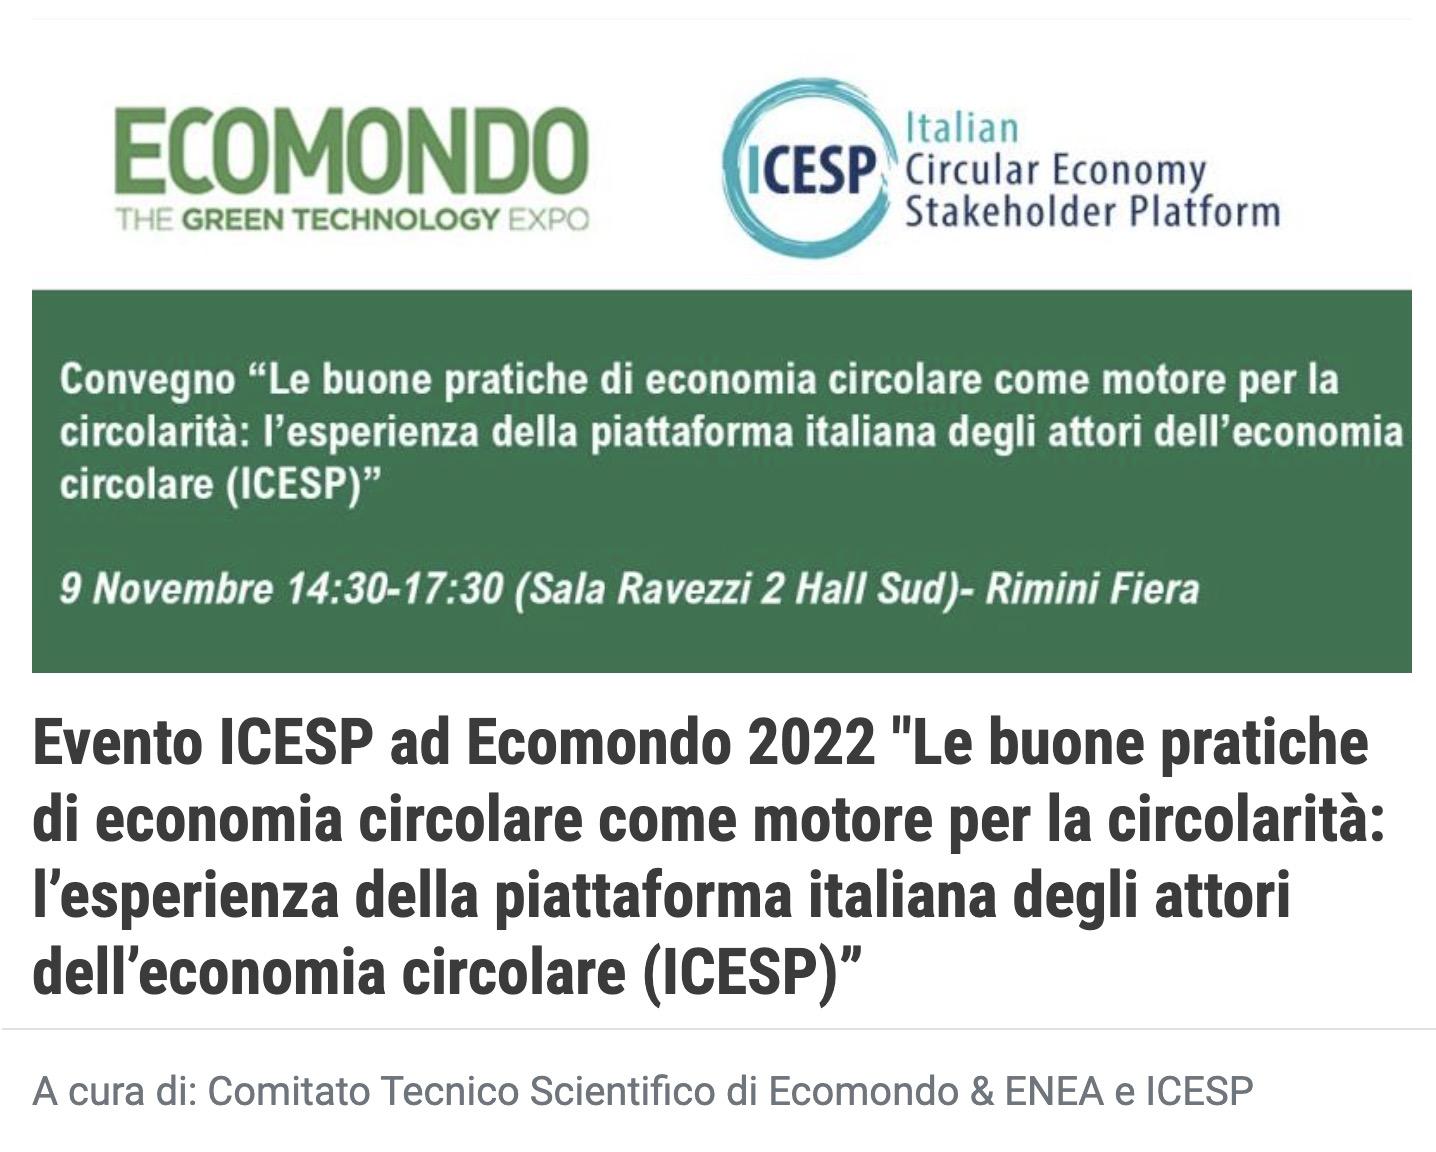 Conferenza ICESP “Le buone pratiche di economia circolare come motore per la circolarità”